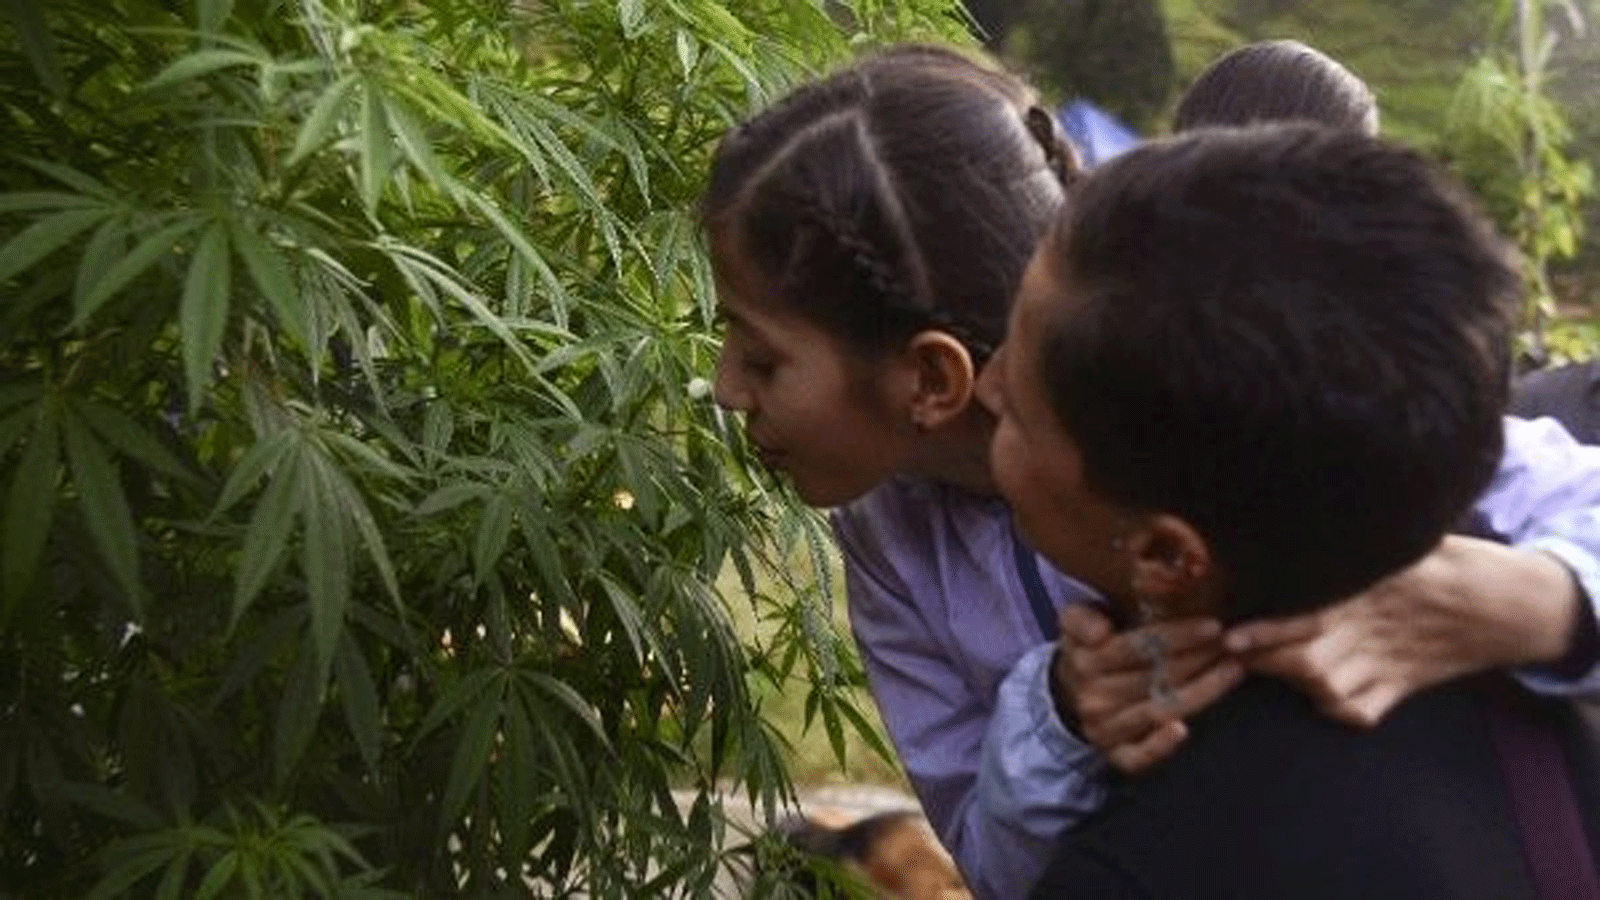 إينيس كانو (يمين) وابنتها لونا فالنتينا التي تستخدم الماريجوانا لعلاج أعراض الصرع، تزور معمل القنب بالقرب من ميديلين. 7 أيار\ مايو 2015